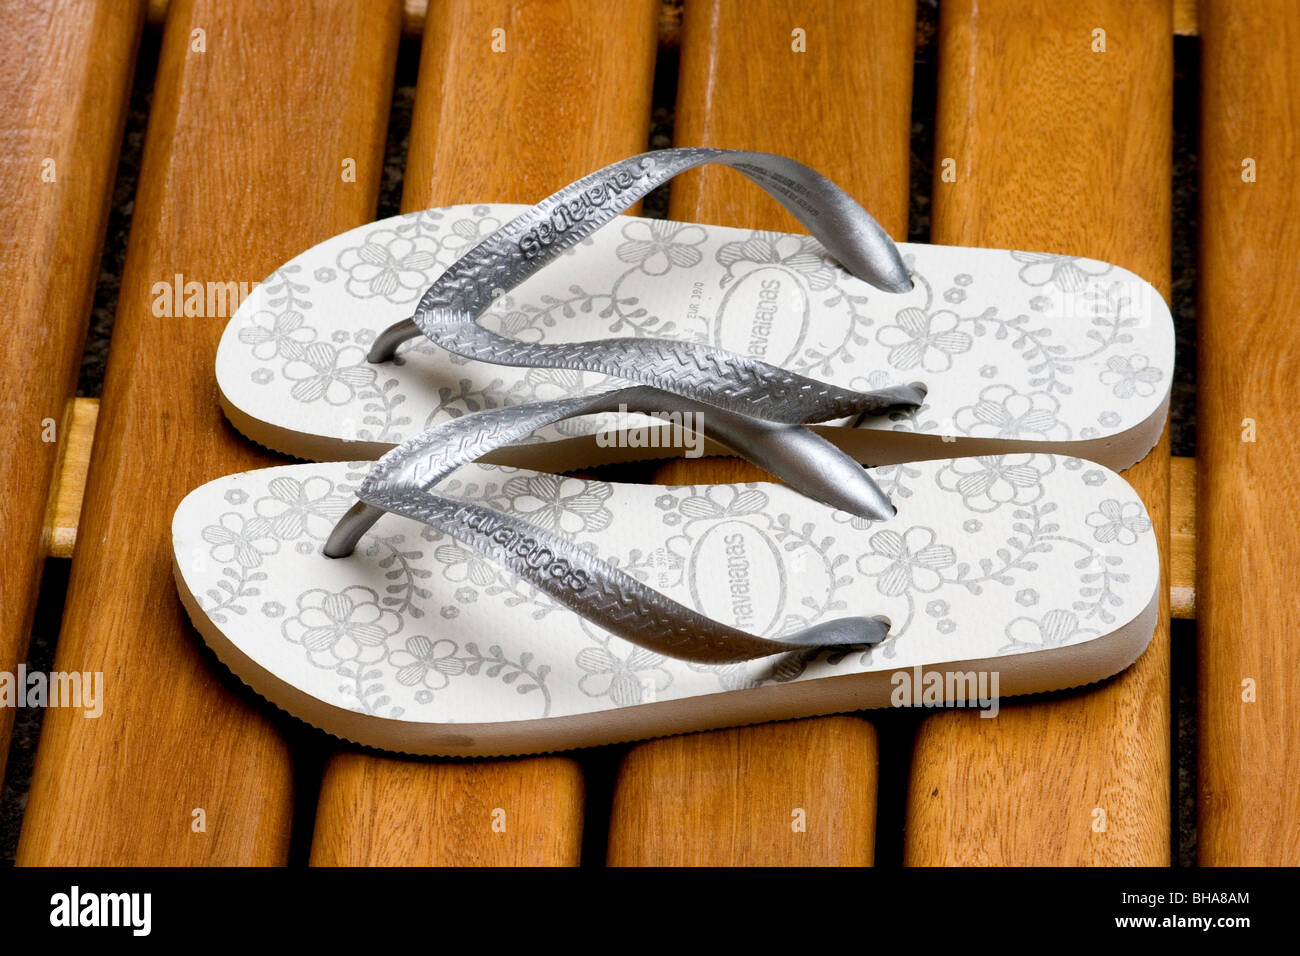 Flip-flops sandals on wooden deck Stock Photo